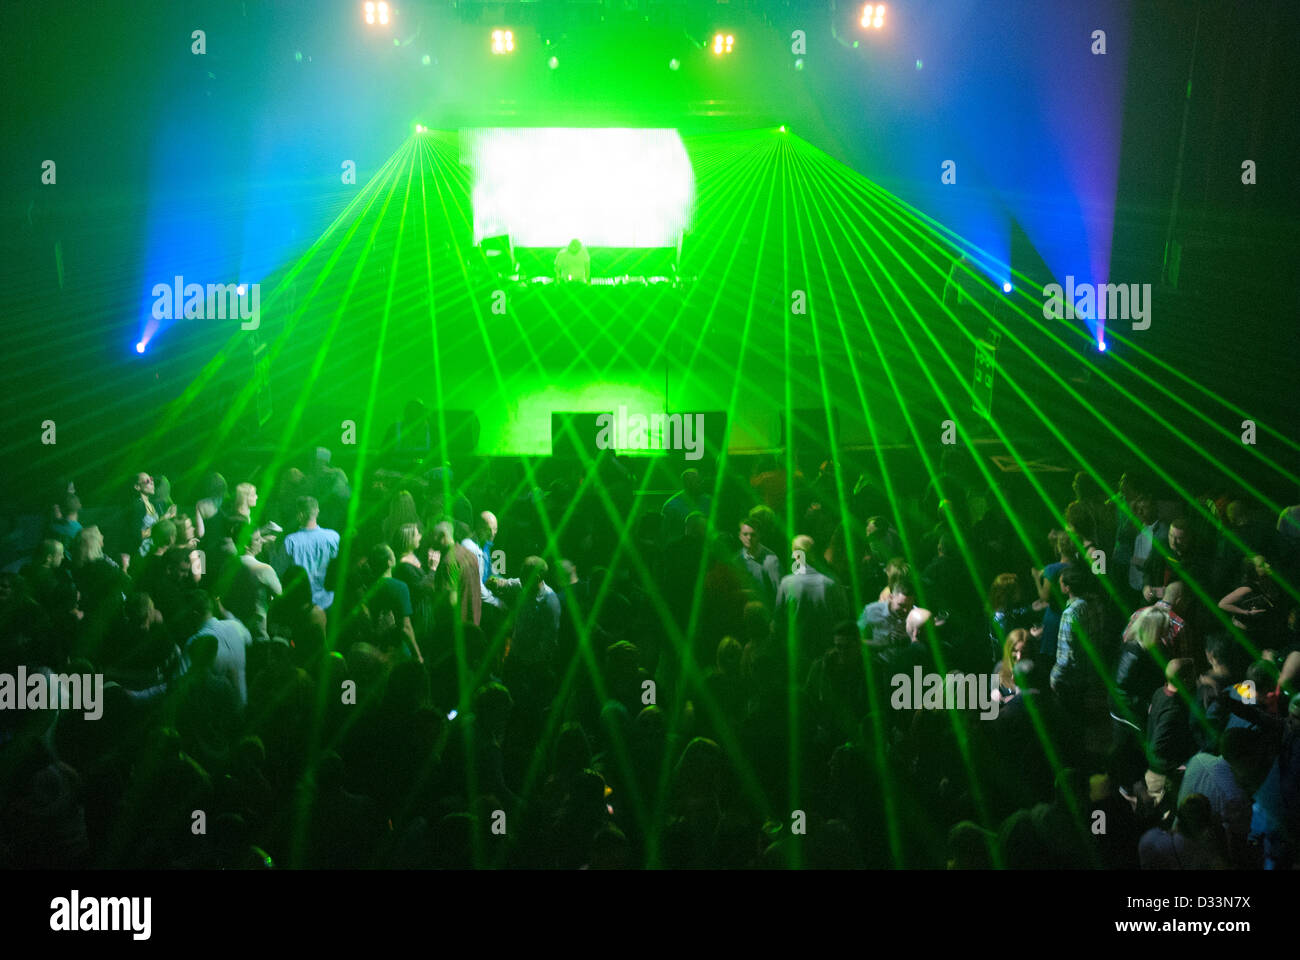 La vie nocturne de Londres - Lasers couvrant la foule à un concert Banque D'Images